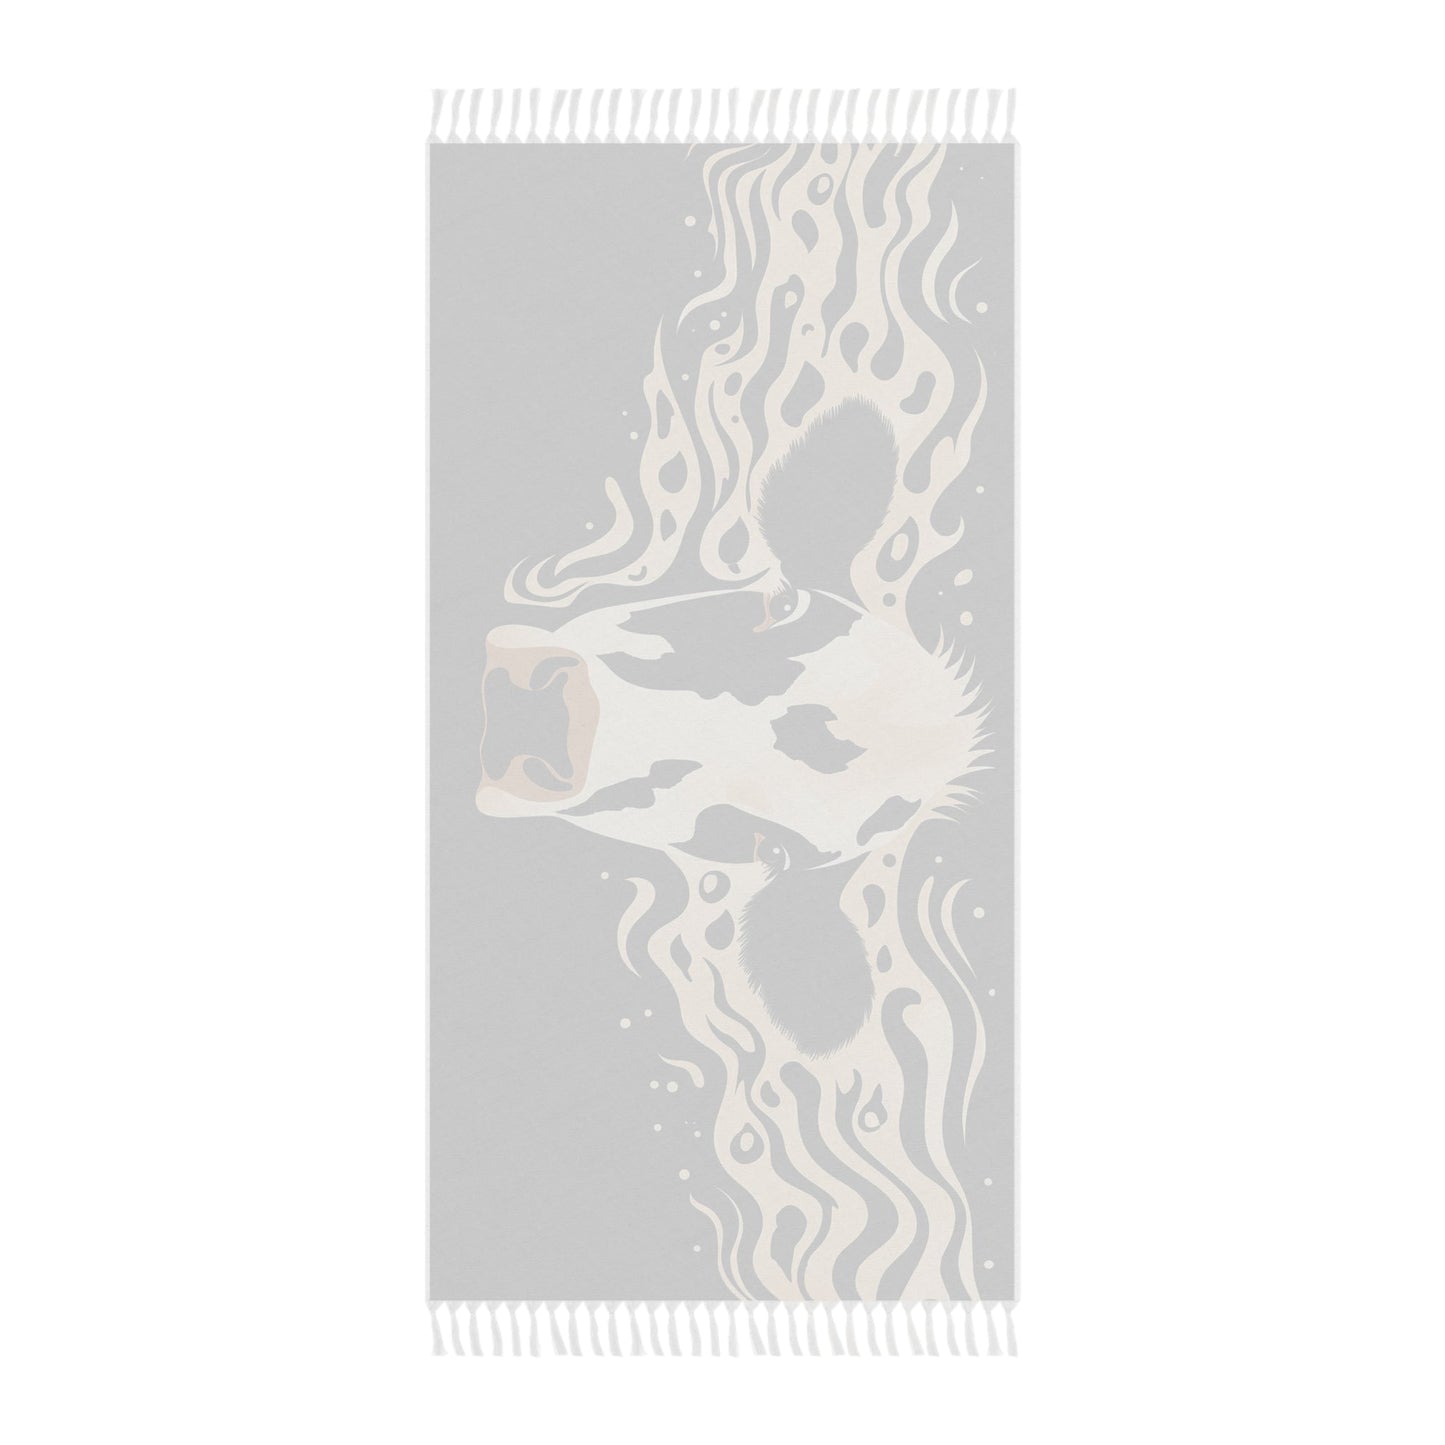 Holstein Cow Western Boho Beach Cloth Shawl: Multi-Use Towel, Blanket, Shawl, Cover-up - FlooredByArt